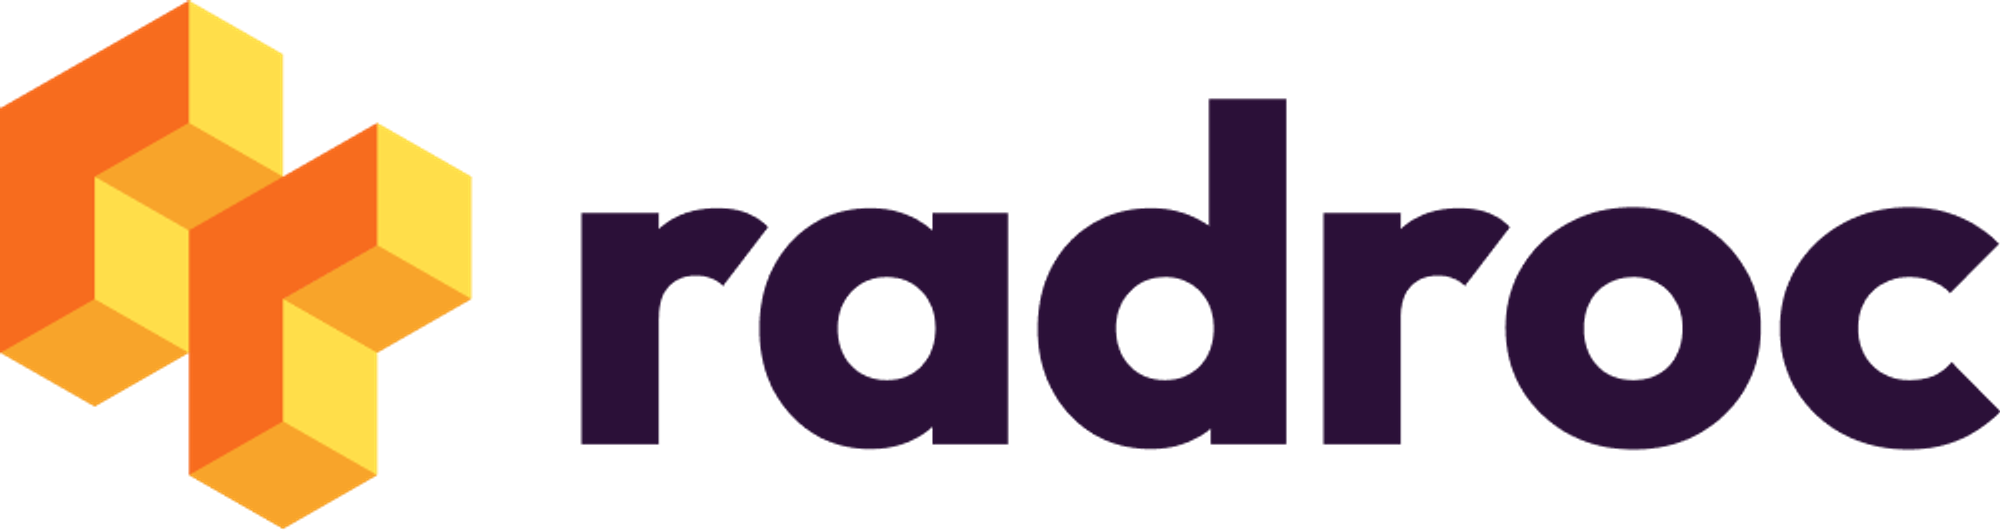 Modern logo design for radroc.com